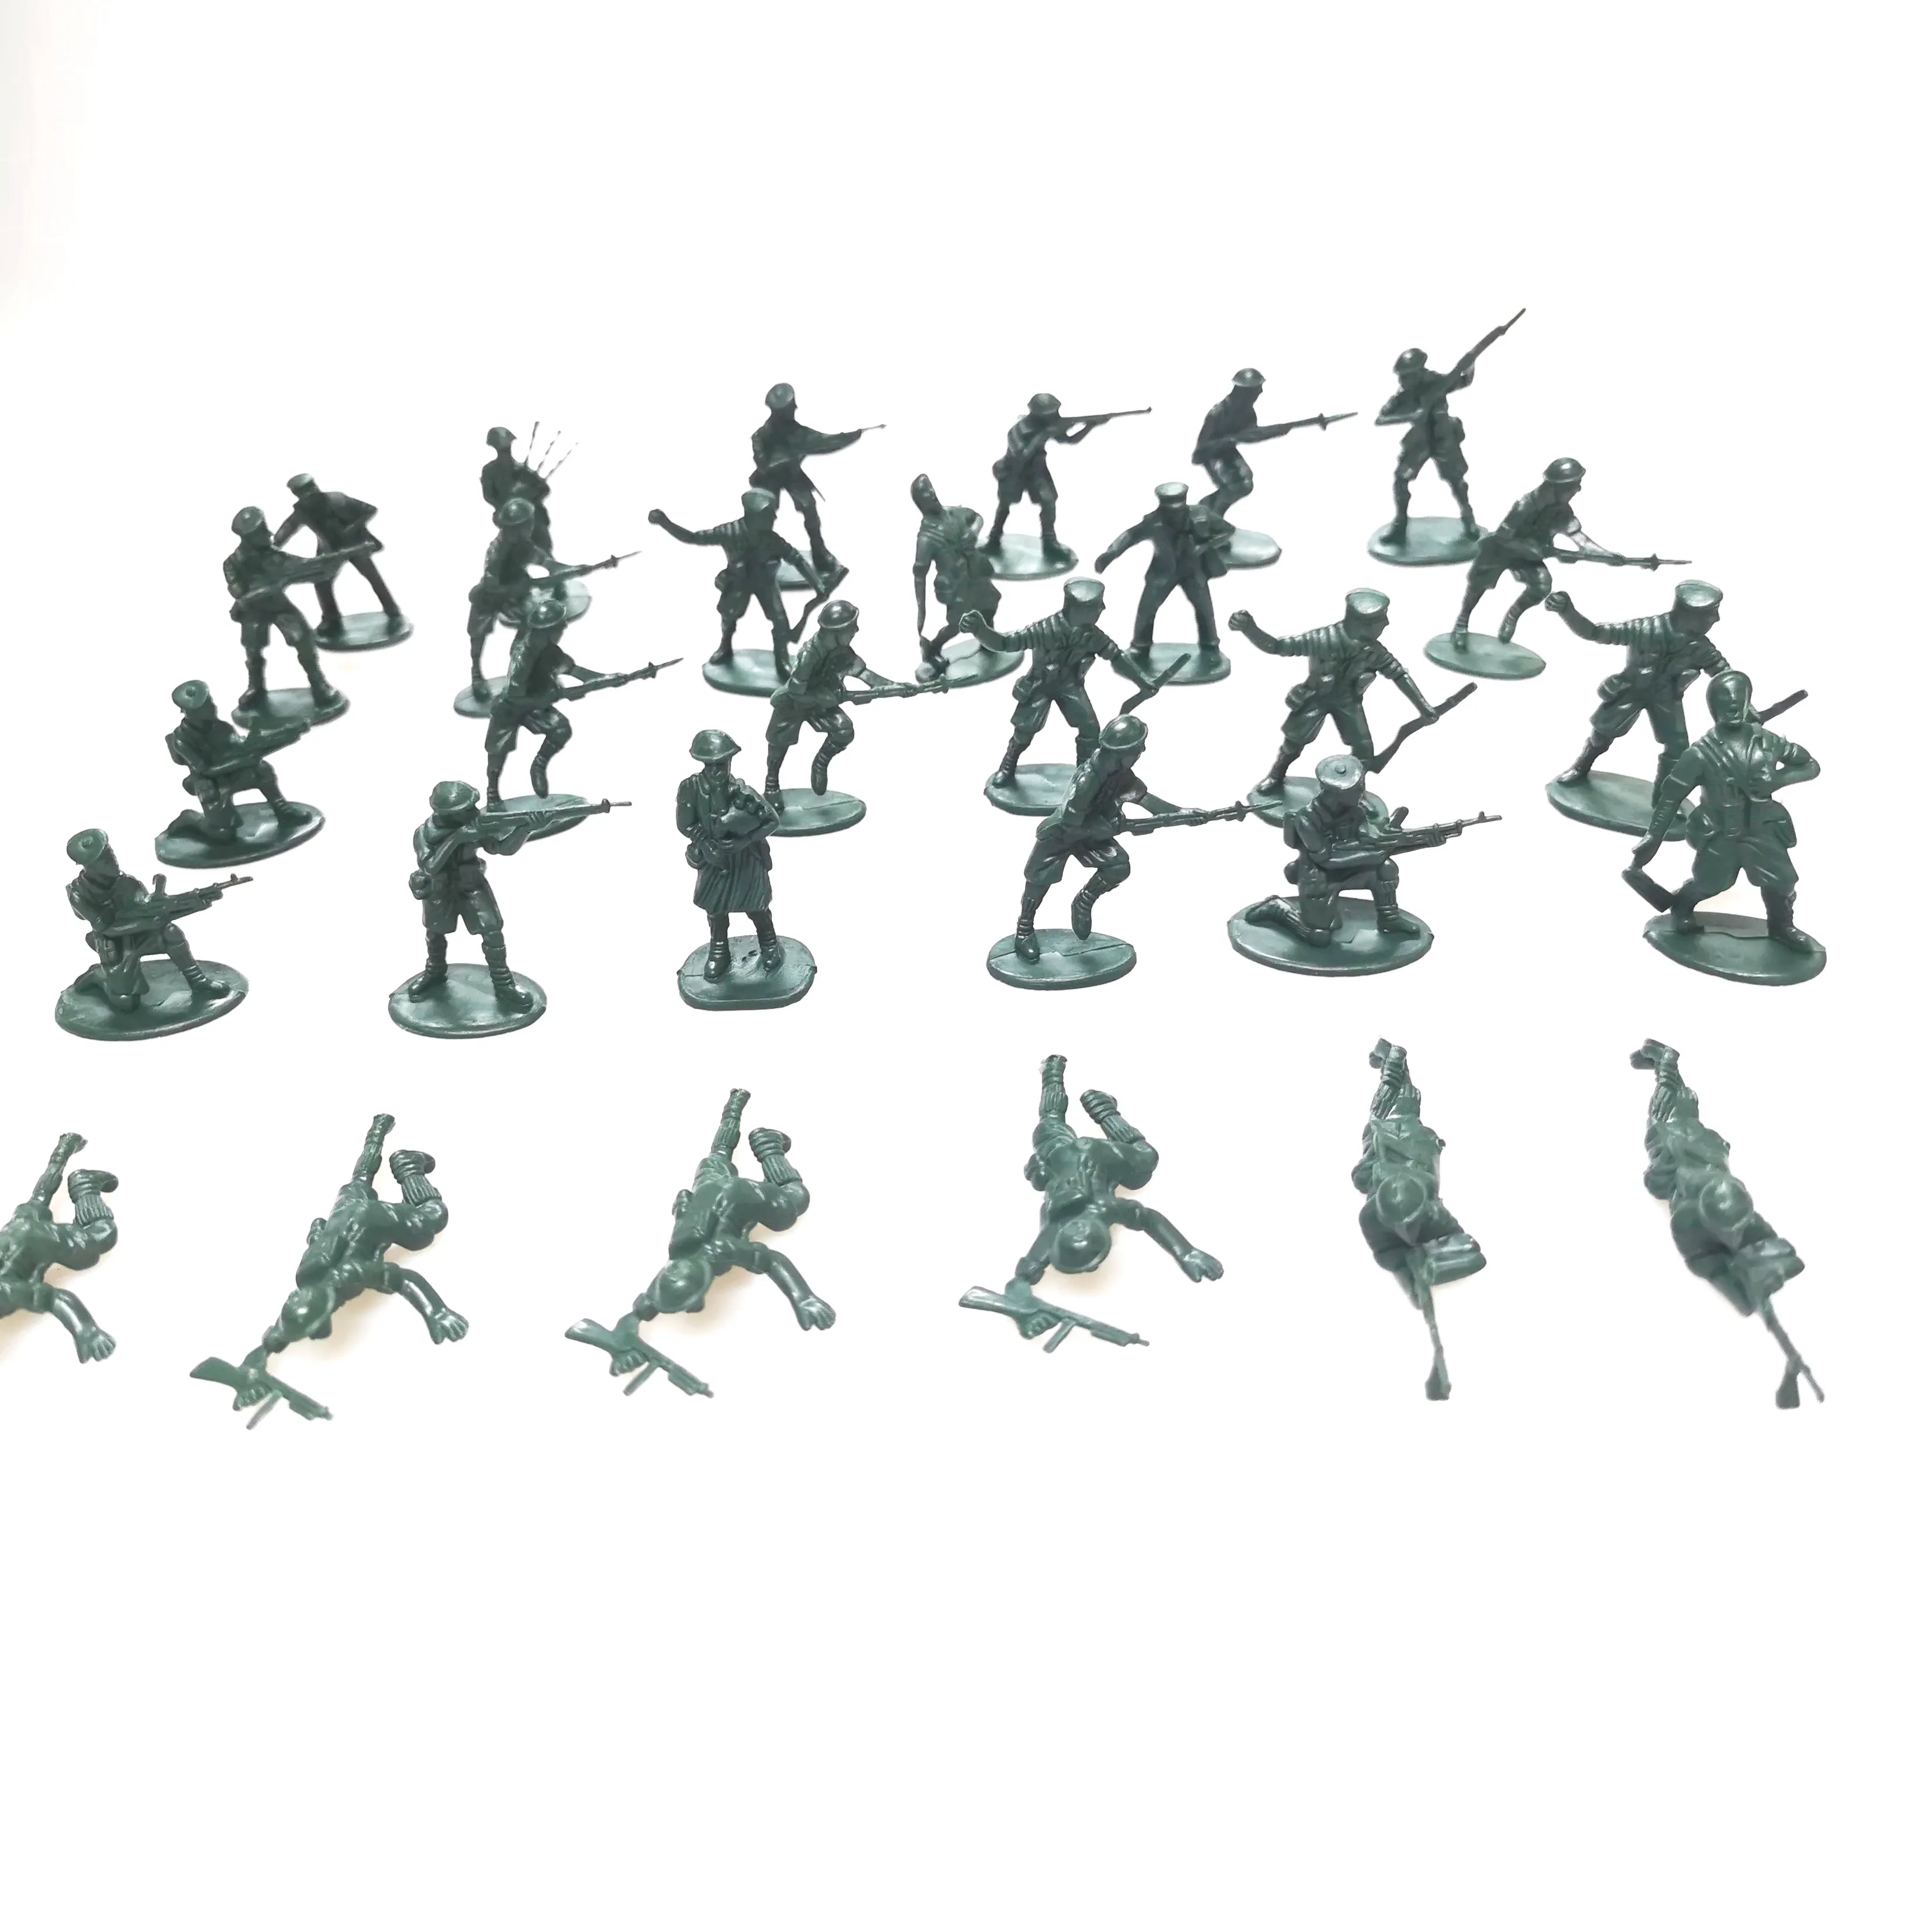 Groupe de combat militaire, jouets en plastique, 144 pièces, ensemble de jeu pour les enfants, garçons et filles, hommes de l'armée